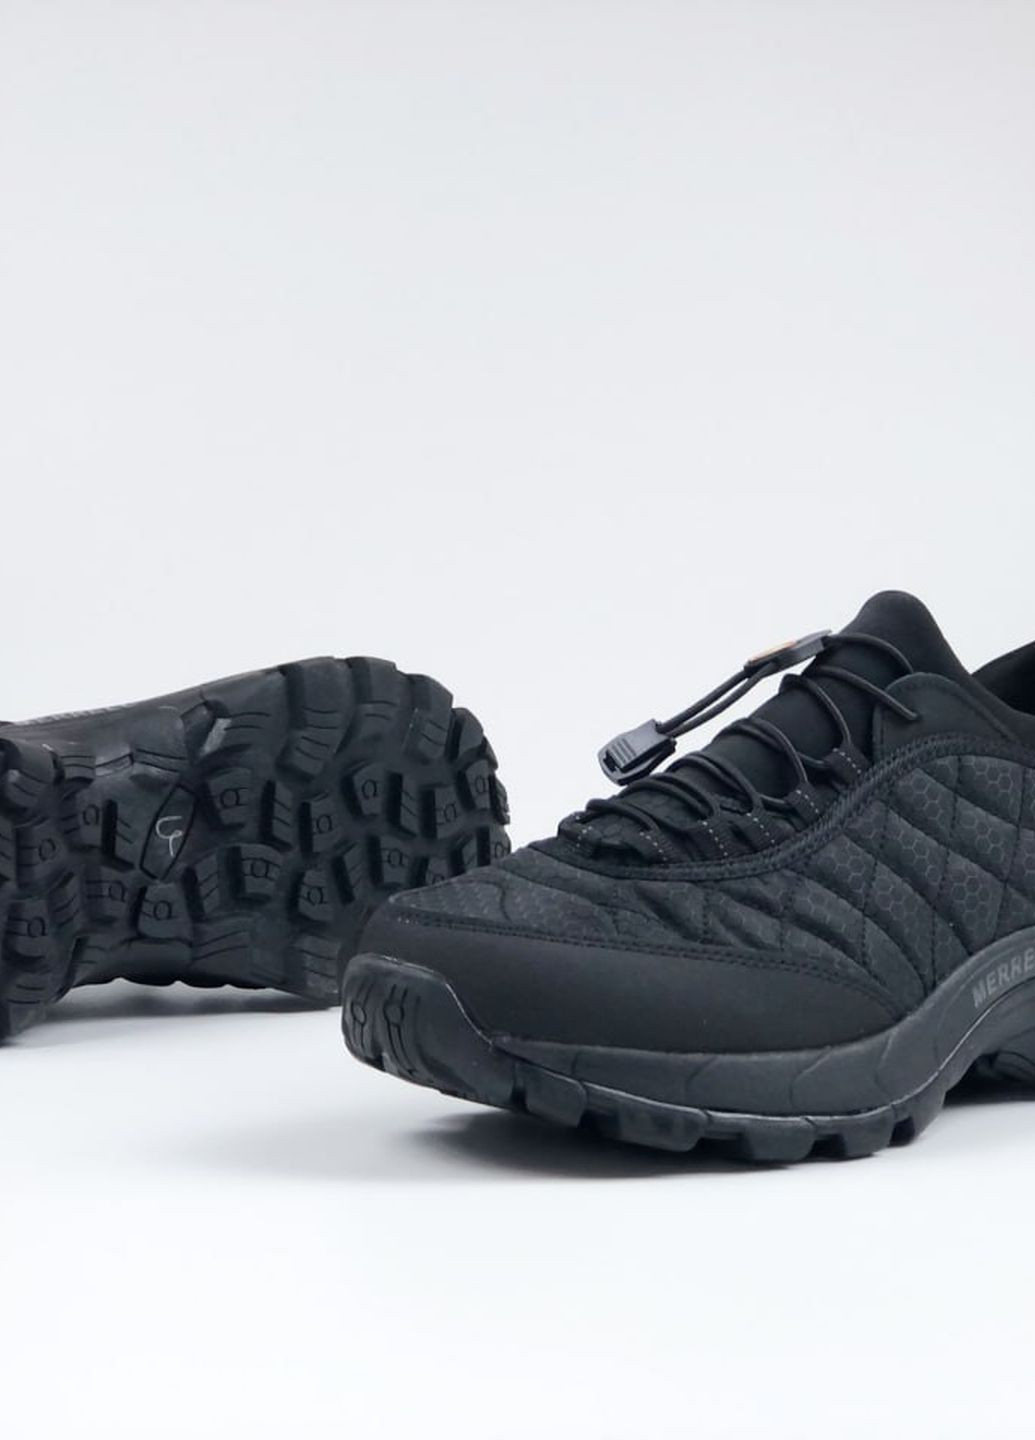 Черные демисезонные кроссовки мужские, вьетнам Merrell Black